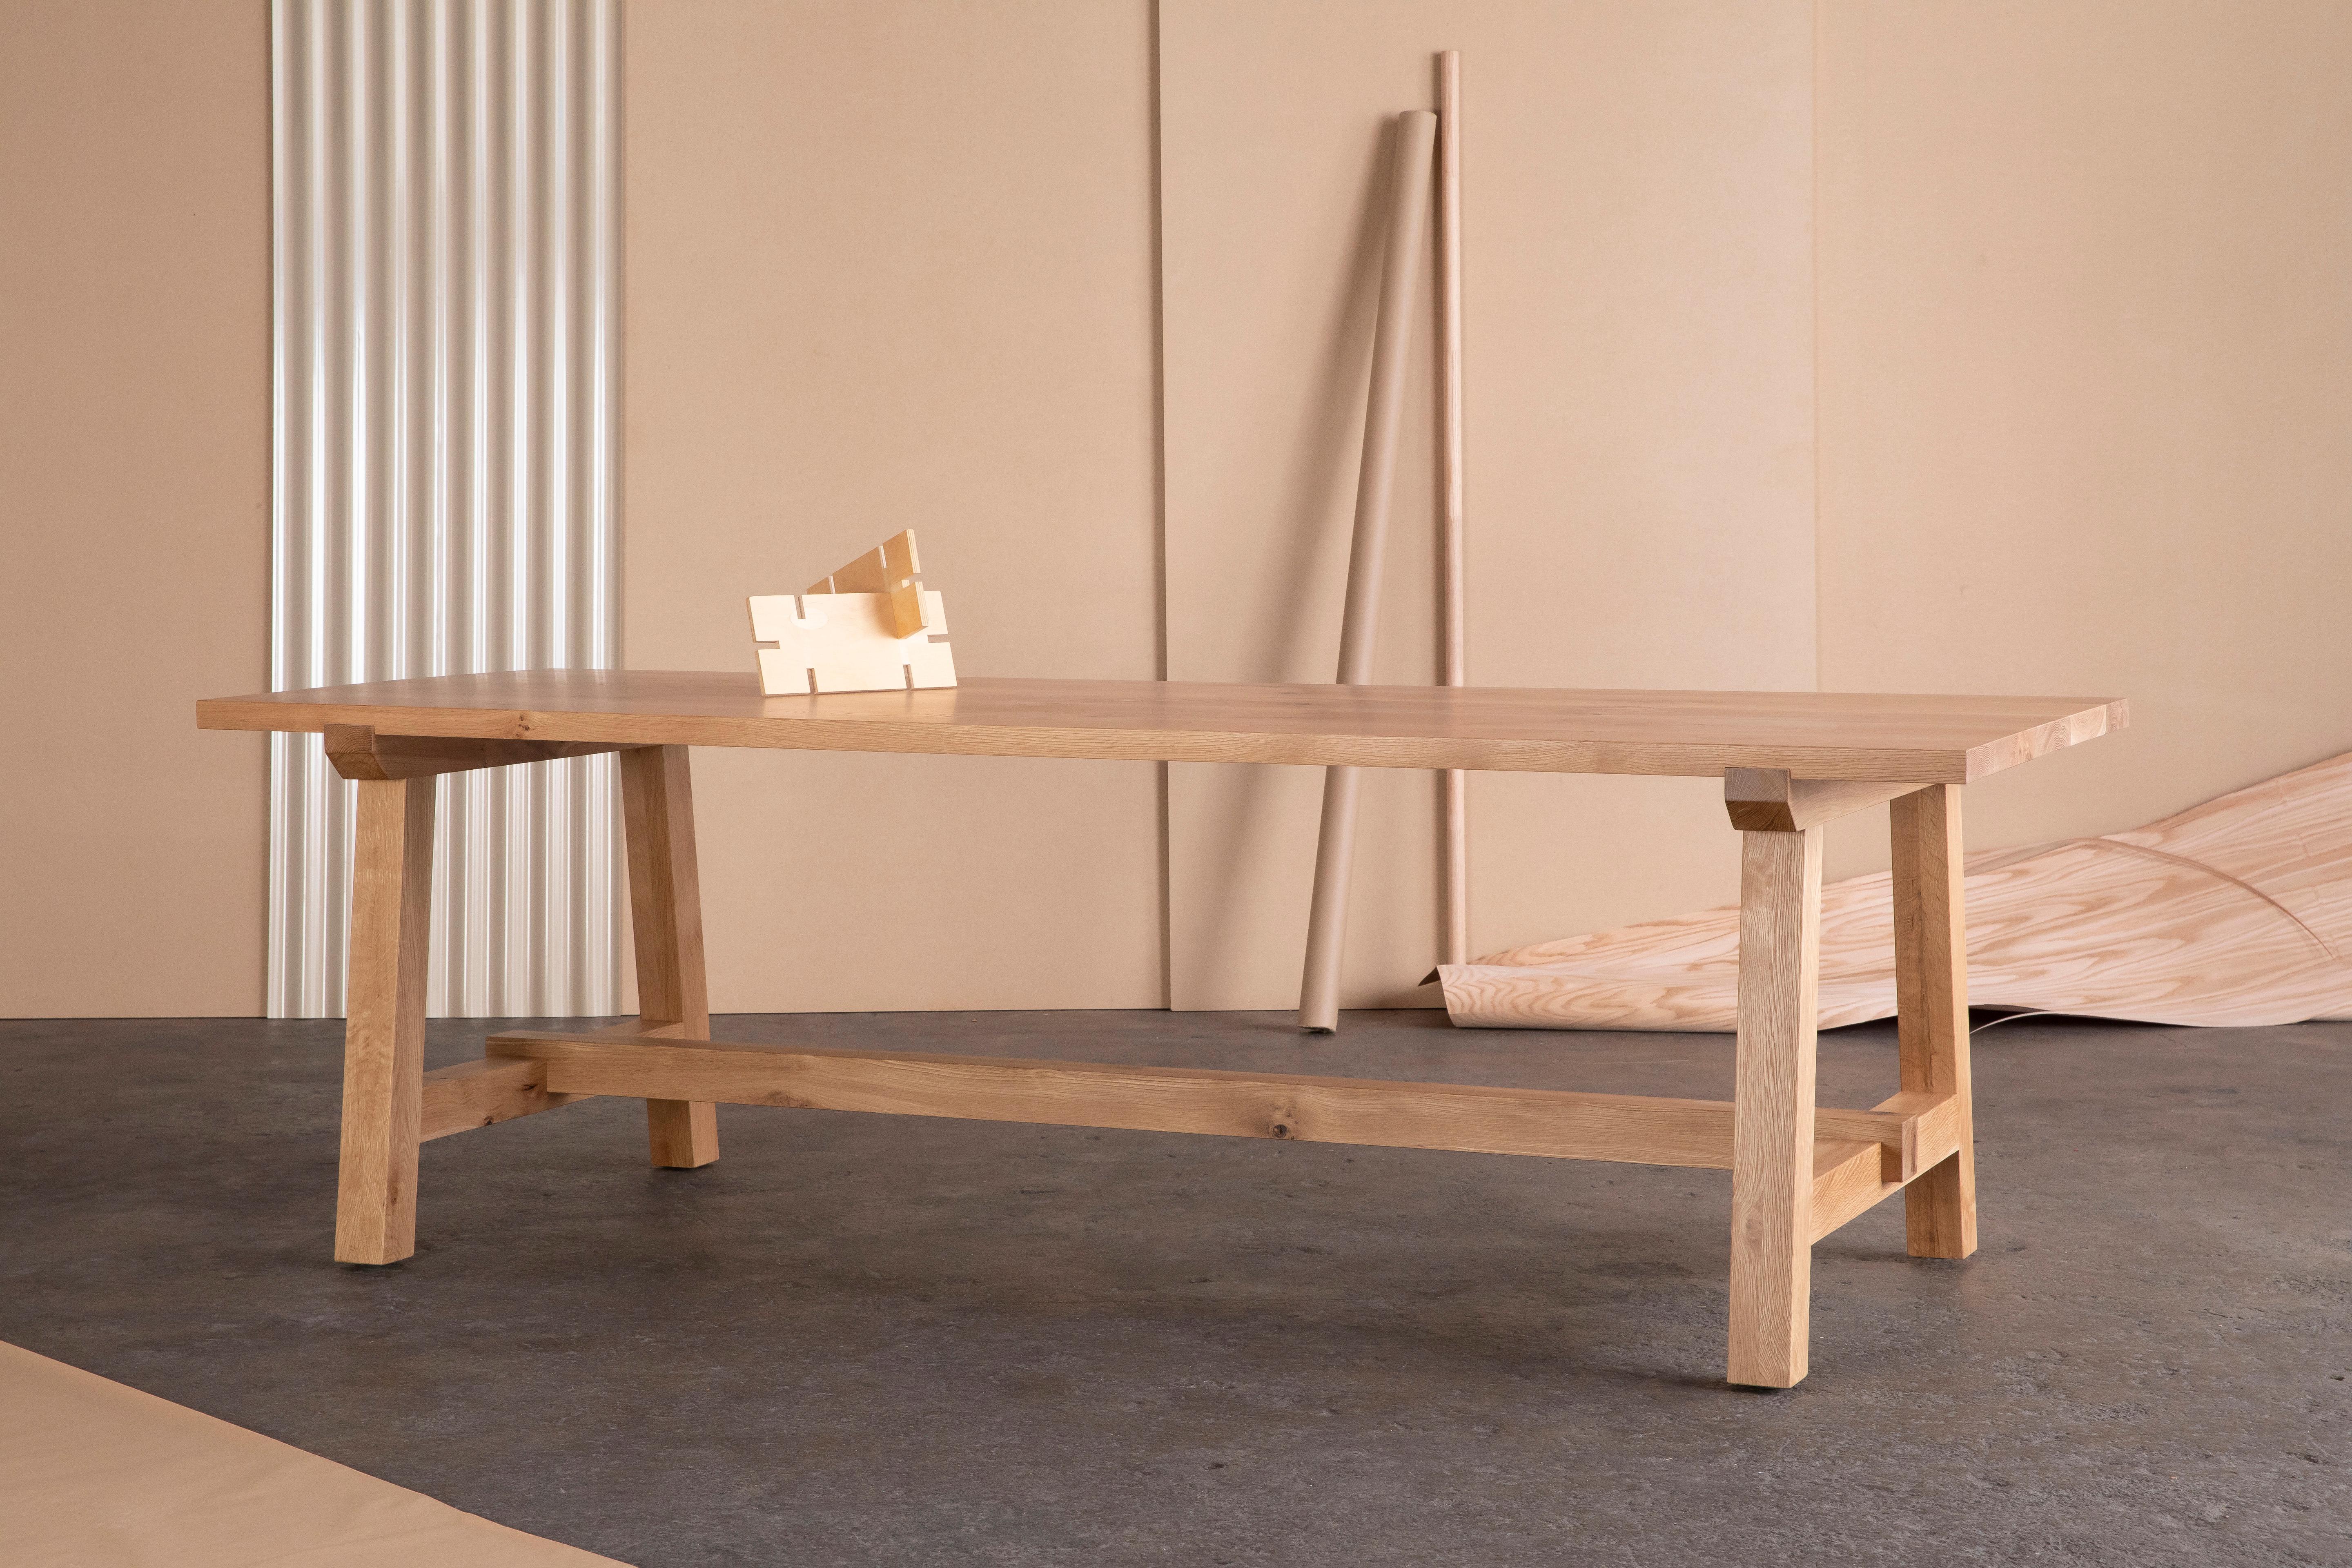 Der Winston-Esstisch aus Nussbaumholz hat einen zeitlosen Look, der sich gut in traditionelle, rustikale und moderne Einrichtungen einfügt.

Das Gestell wird von einer stabilen Massivholzstrebe getragen und definiert den Stil und die Funktion